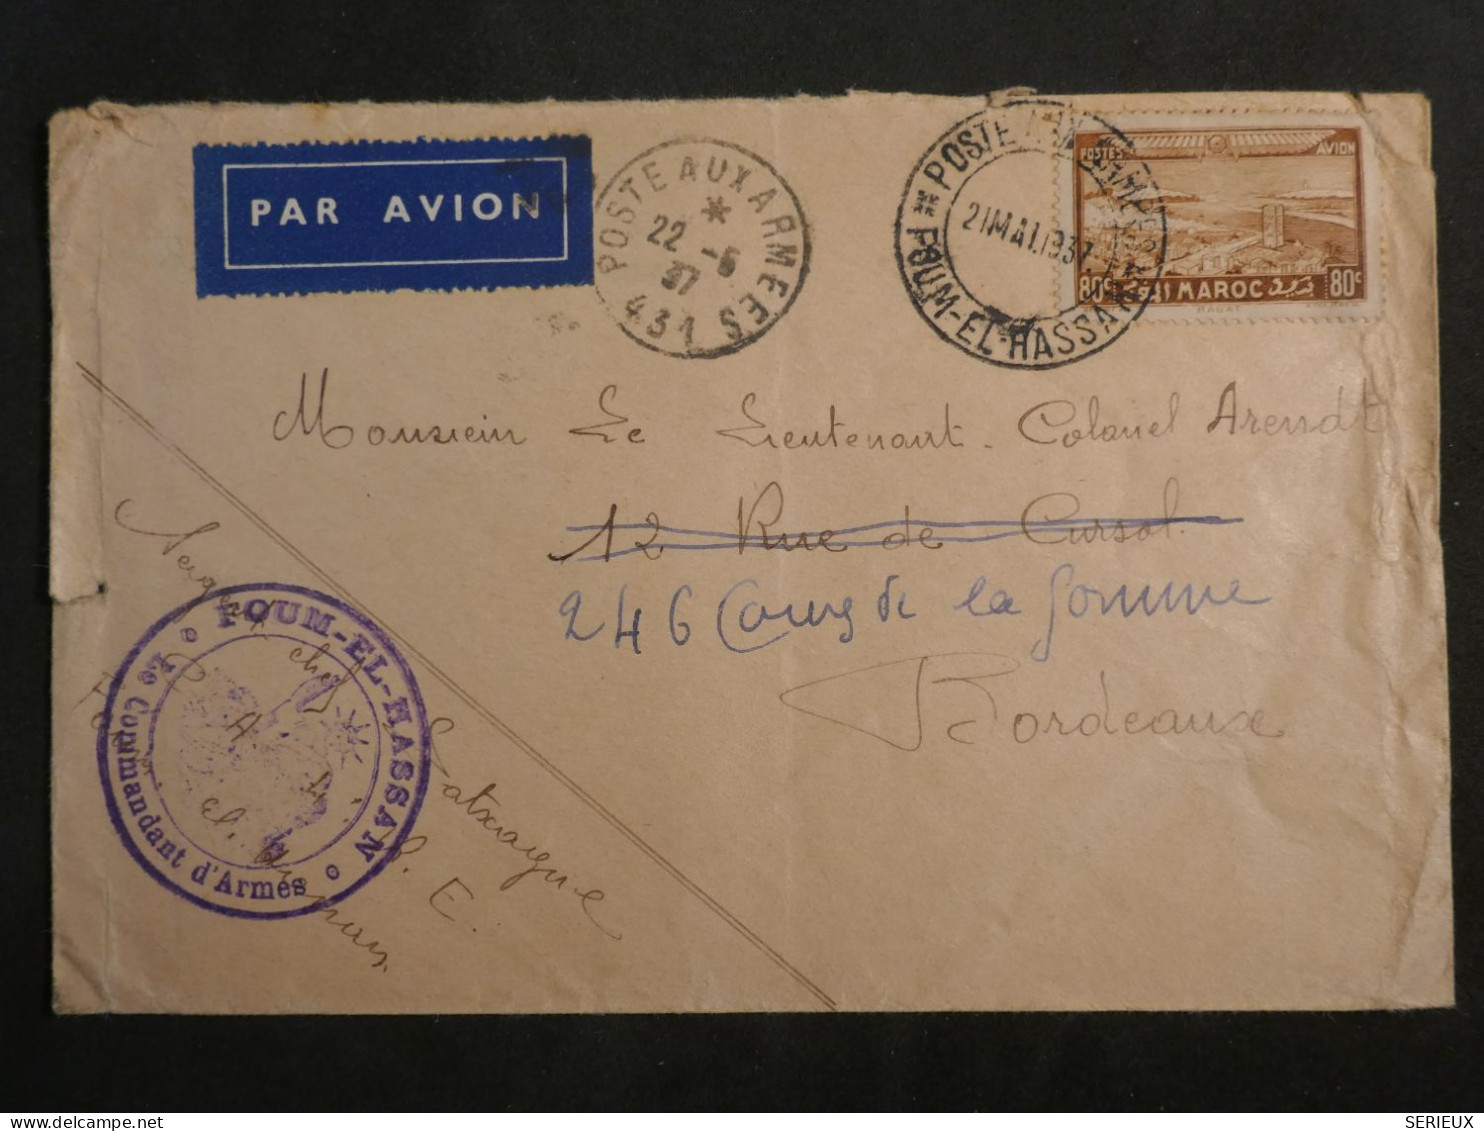 DL0  MAROC  LETTRE RR  1937  FOUM EL HASSAN  A BORDEAUX FRANCE + +AFF.  INTERESSANT+ + - Storia Postale